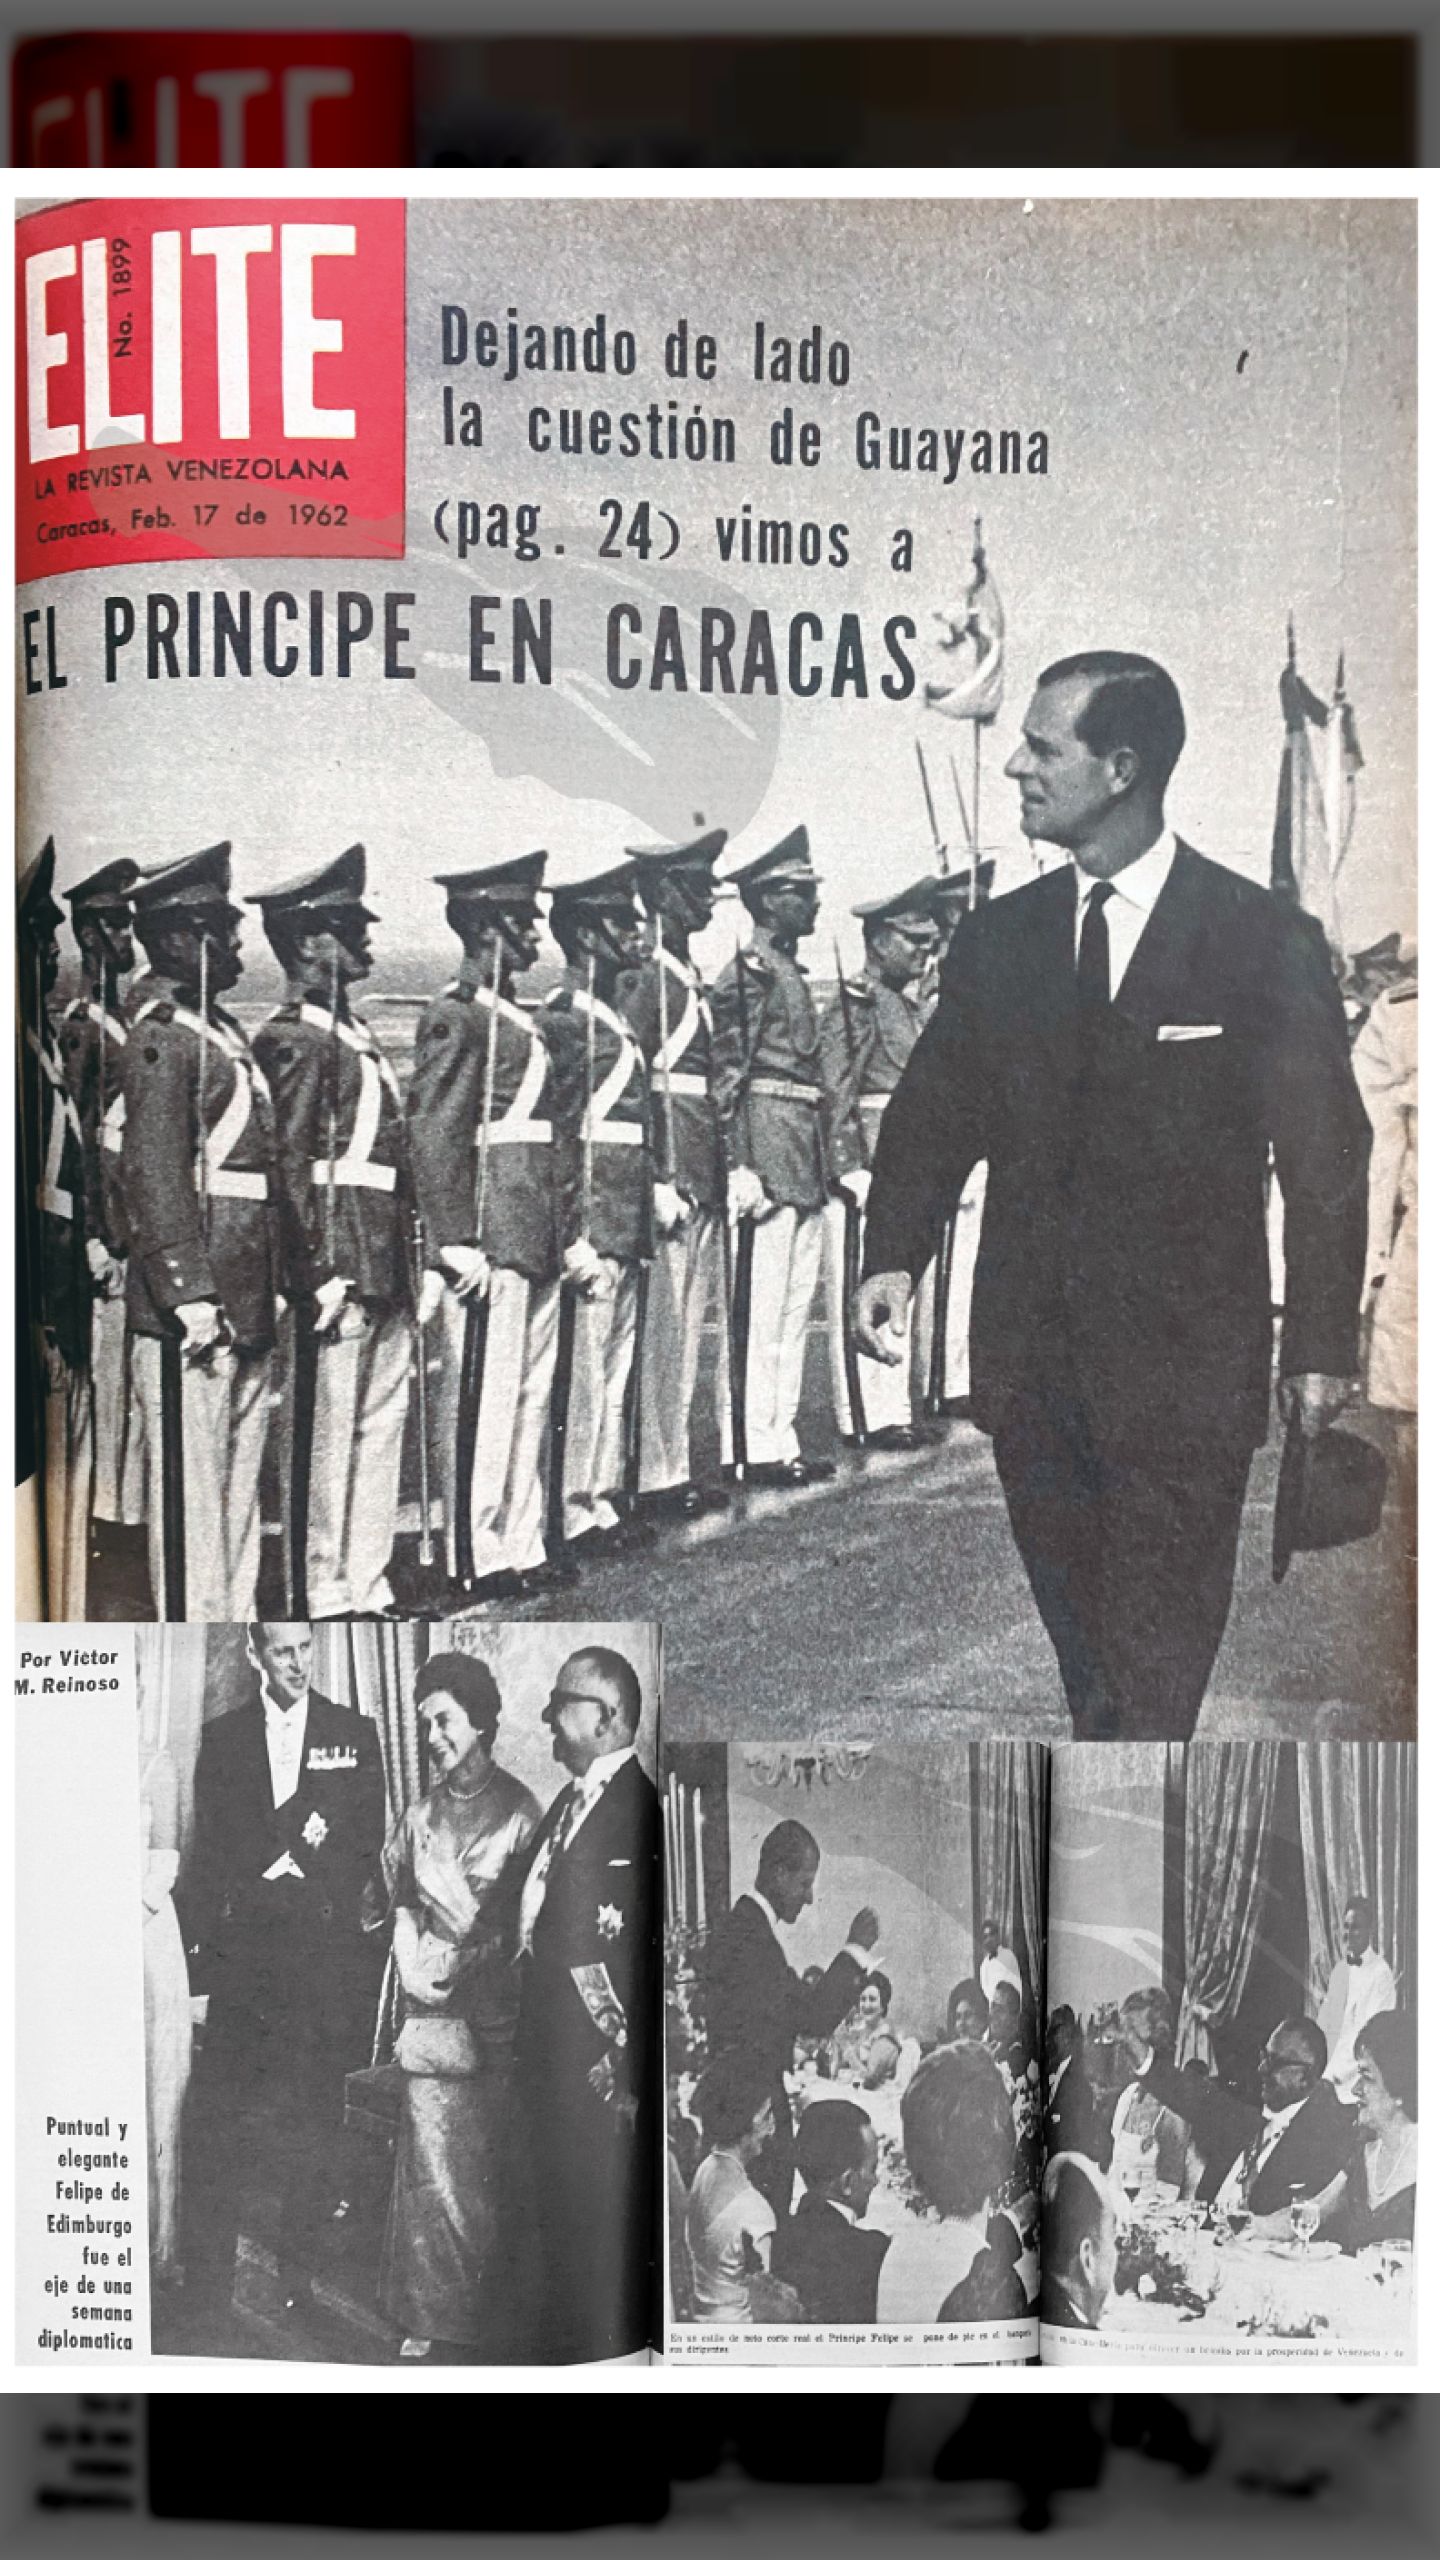 Dejando a un lado la cuestión de Guayana - EL PRINCIPE EN CARACAS (REVISTA ÉLITE, 17 de febrero de 1962)